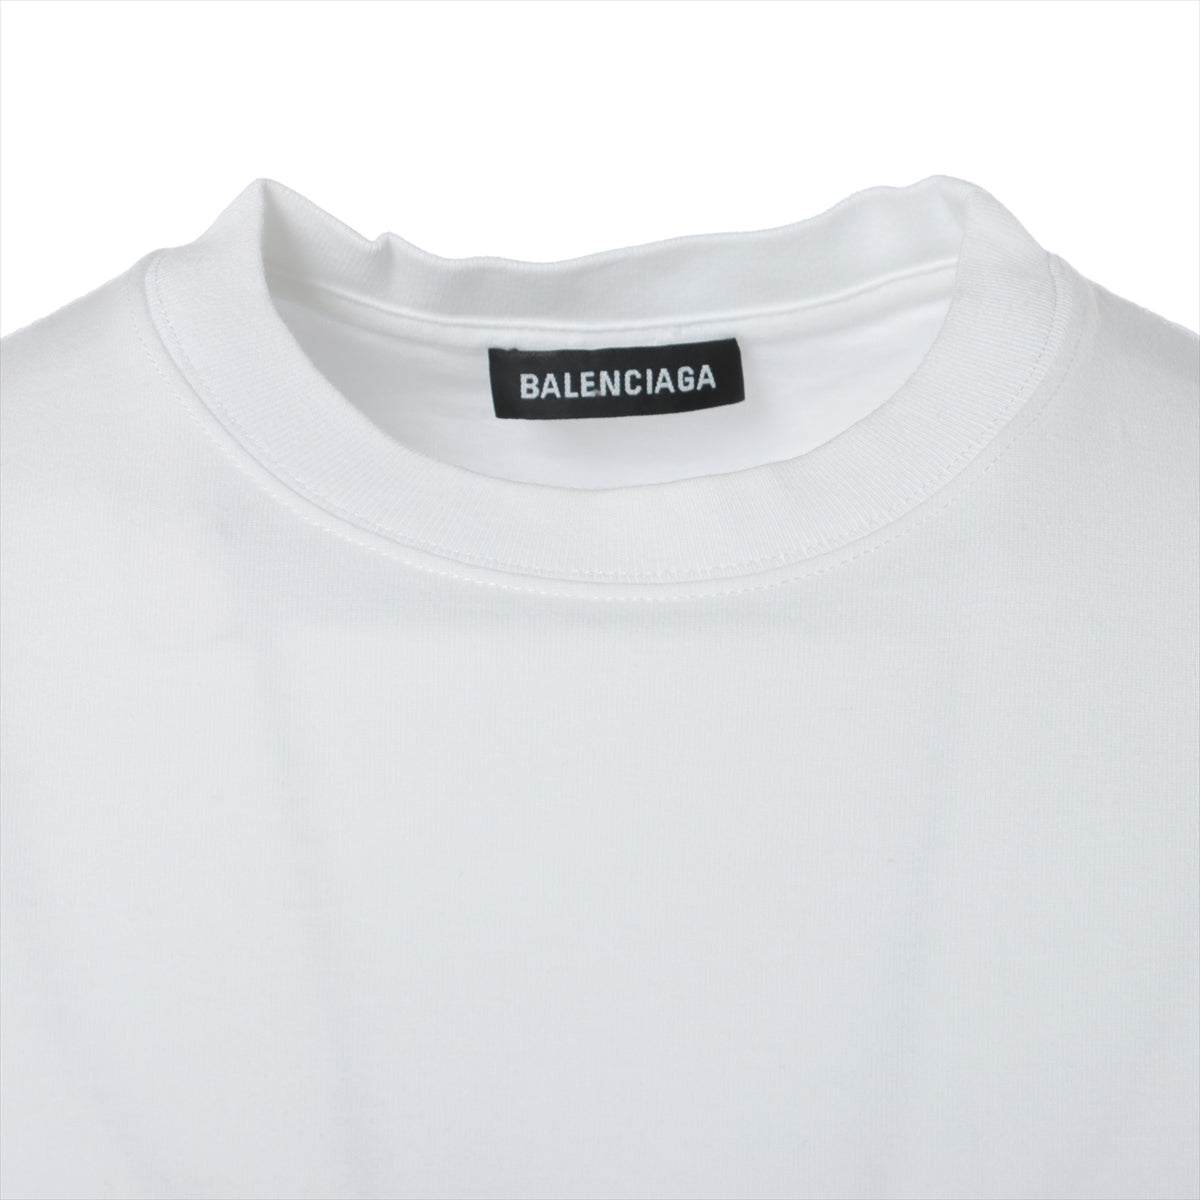 バレンシアガ 20年 コットン Tシャツ XS メンズ ホワイト  612966 NEW COPYRIGHT